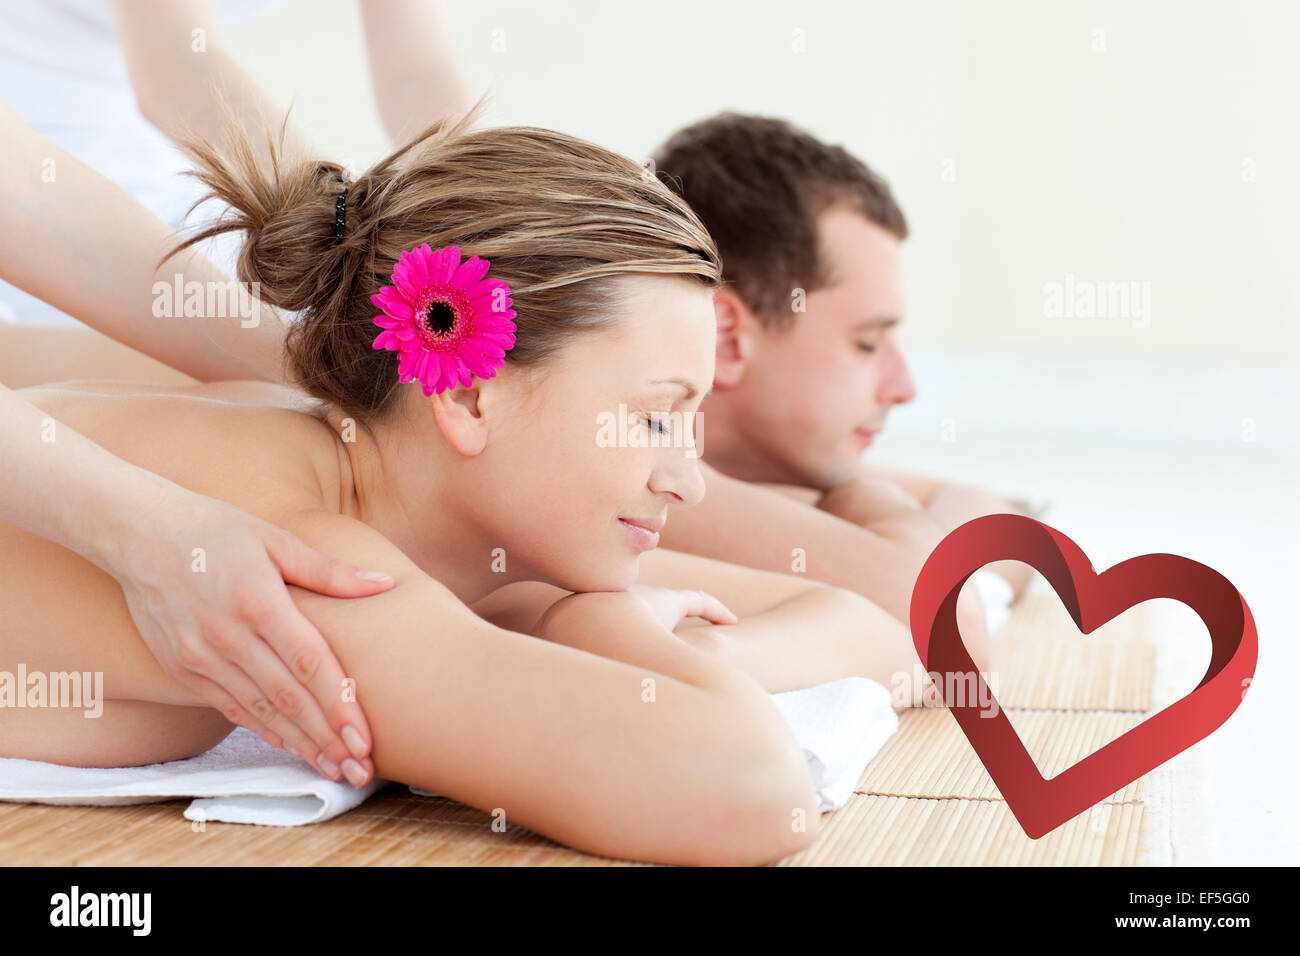 Immagine composita di rilassata giovane avente un massaggio alla schiena Foto Stock